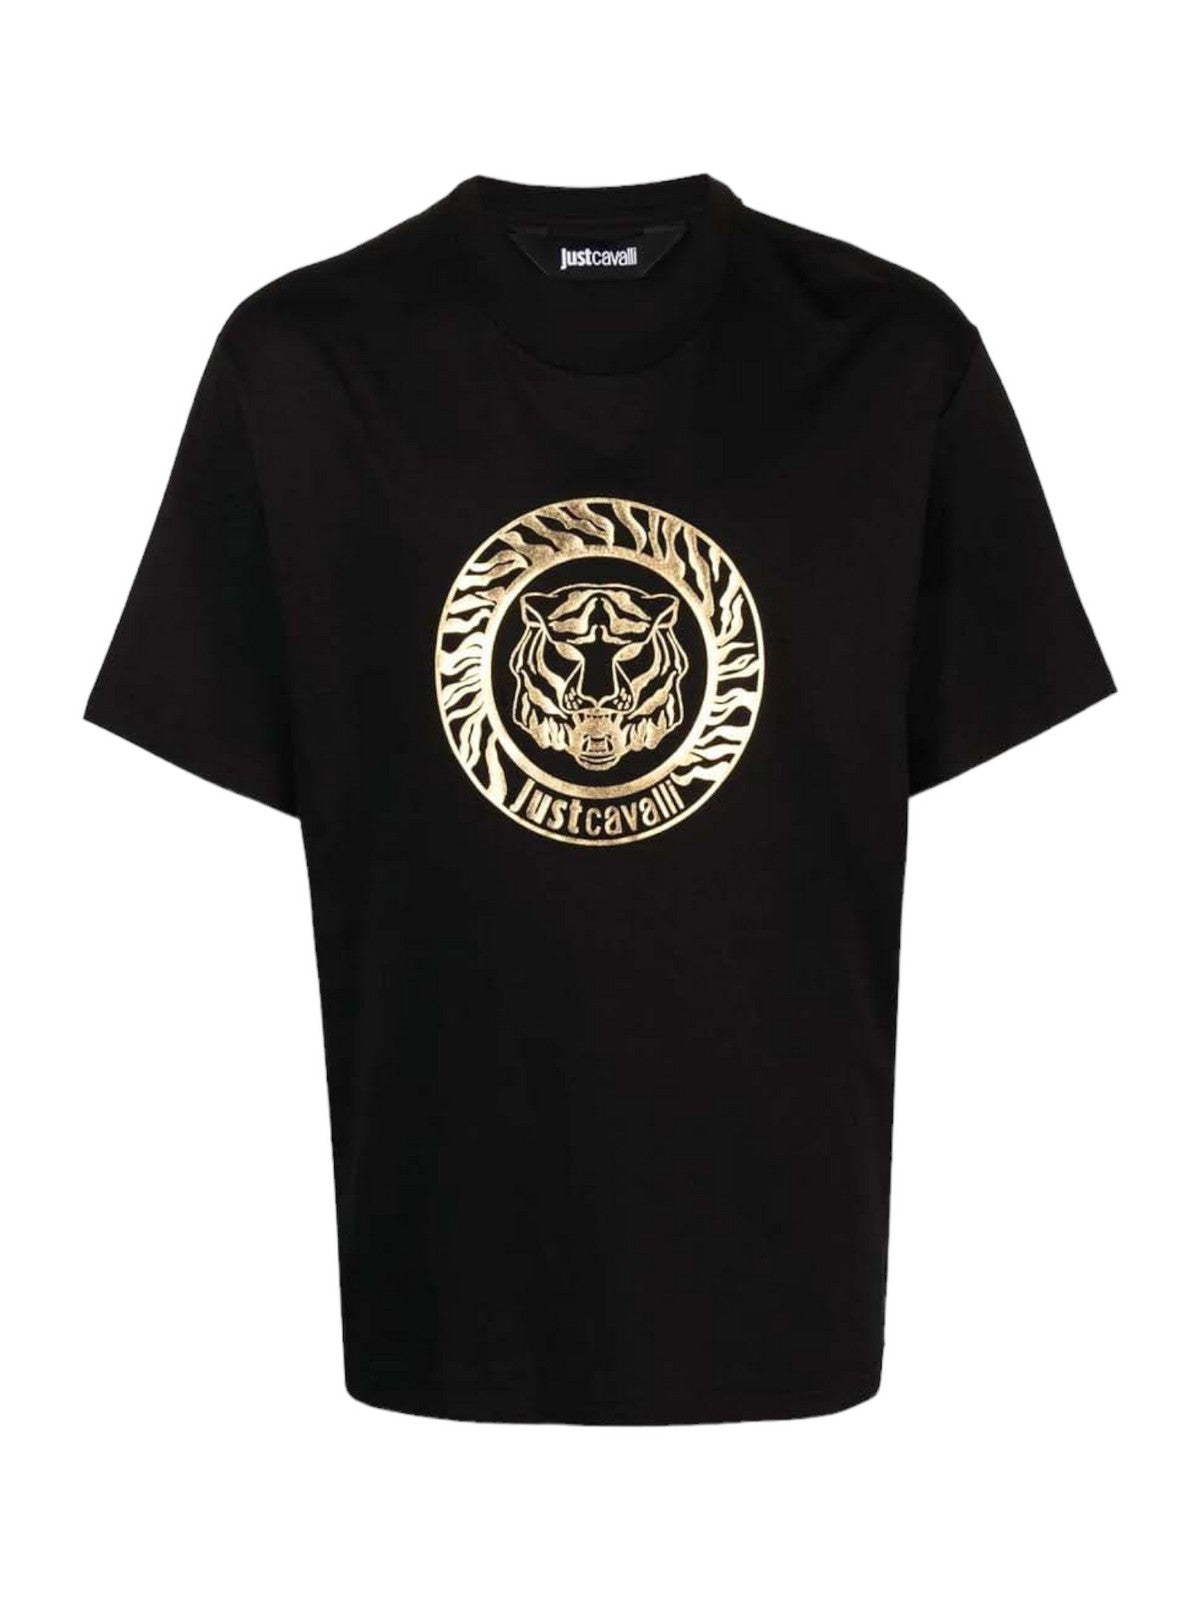 JUST CAVALLI T-Shirt et Polo Hommes 75OAHT01 CJ500 899 Noir